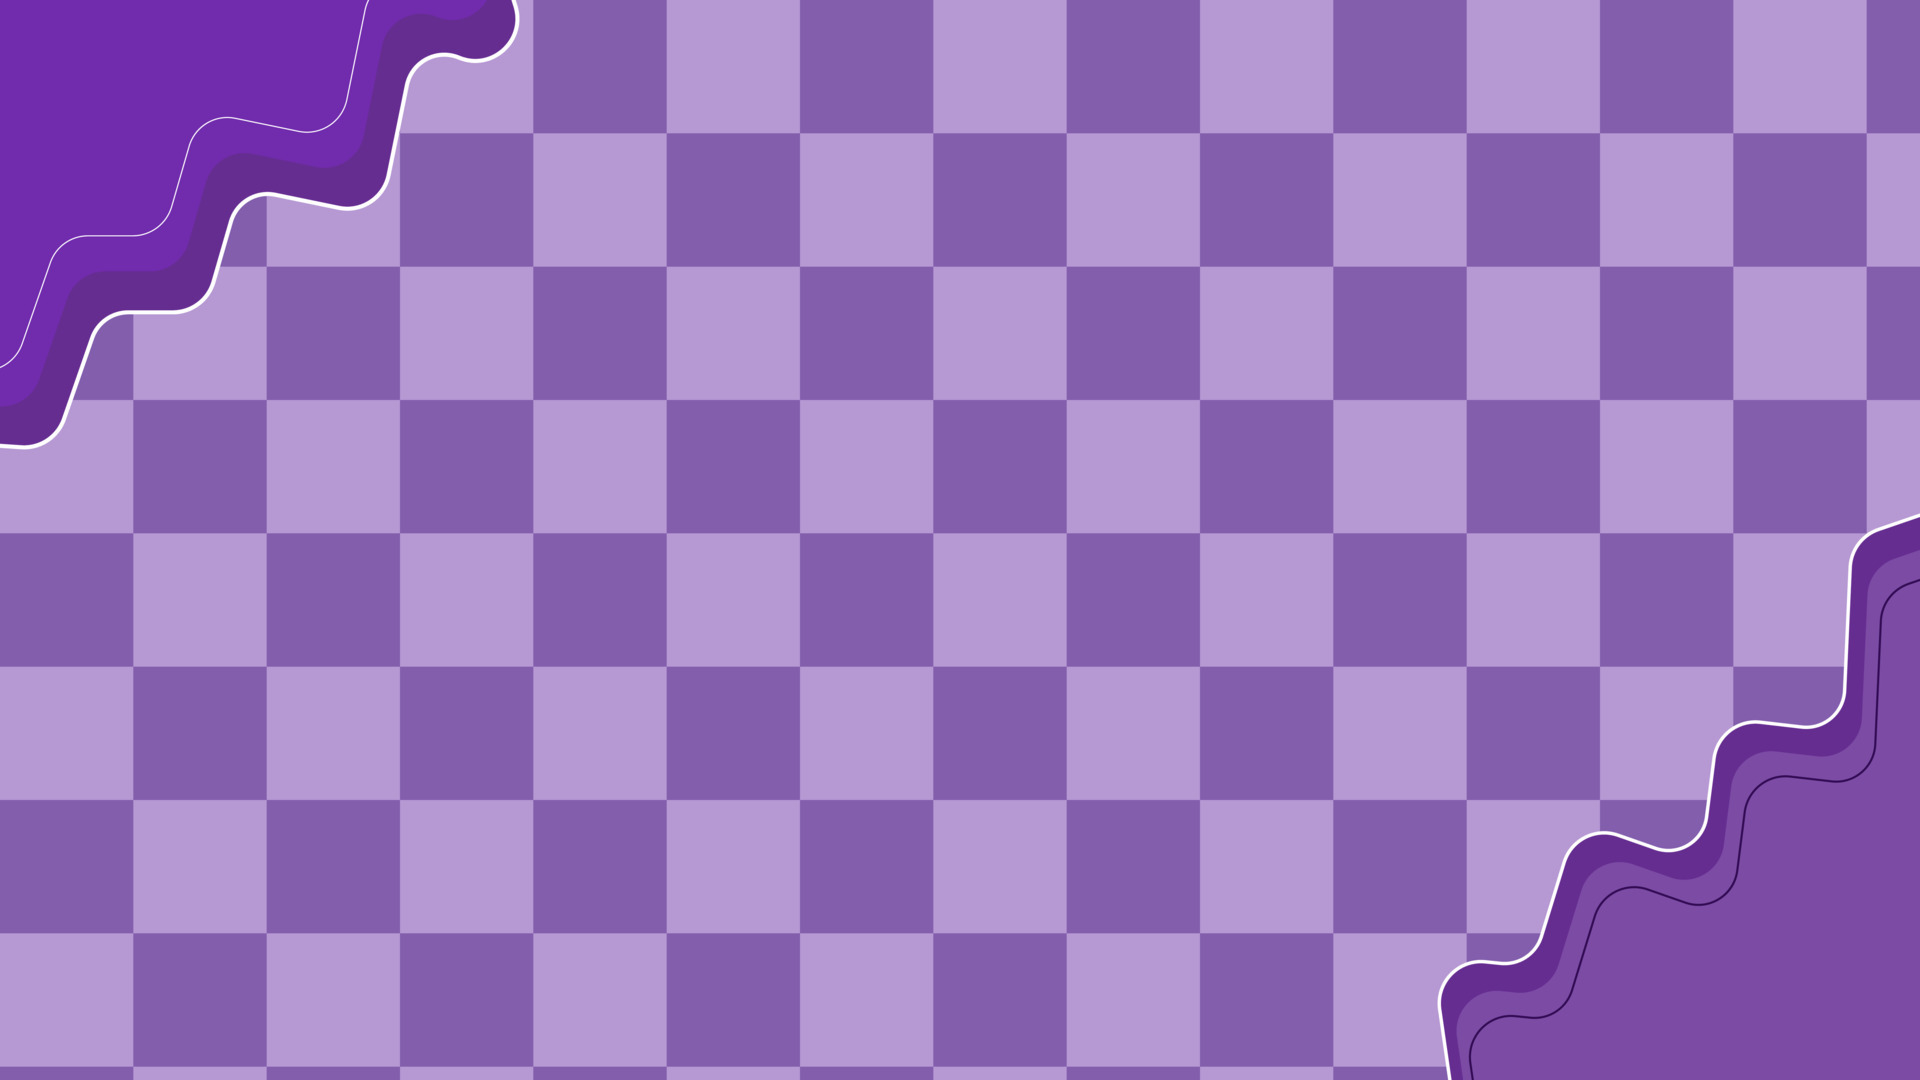 Estética retrô pequeno tabuleiro de xadrez preto e branco xadrez xadrez  papel de parede xadrez perfeito para cartão postal papel de parede pano de  fundo banner para seu projeto